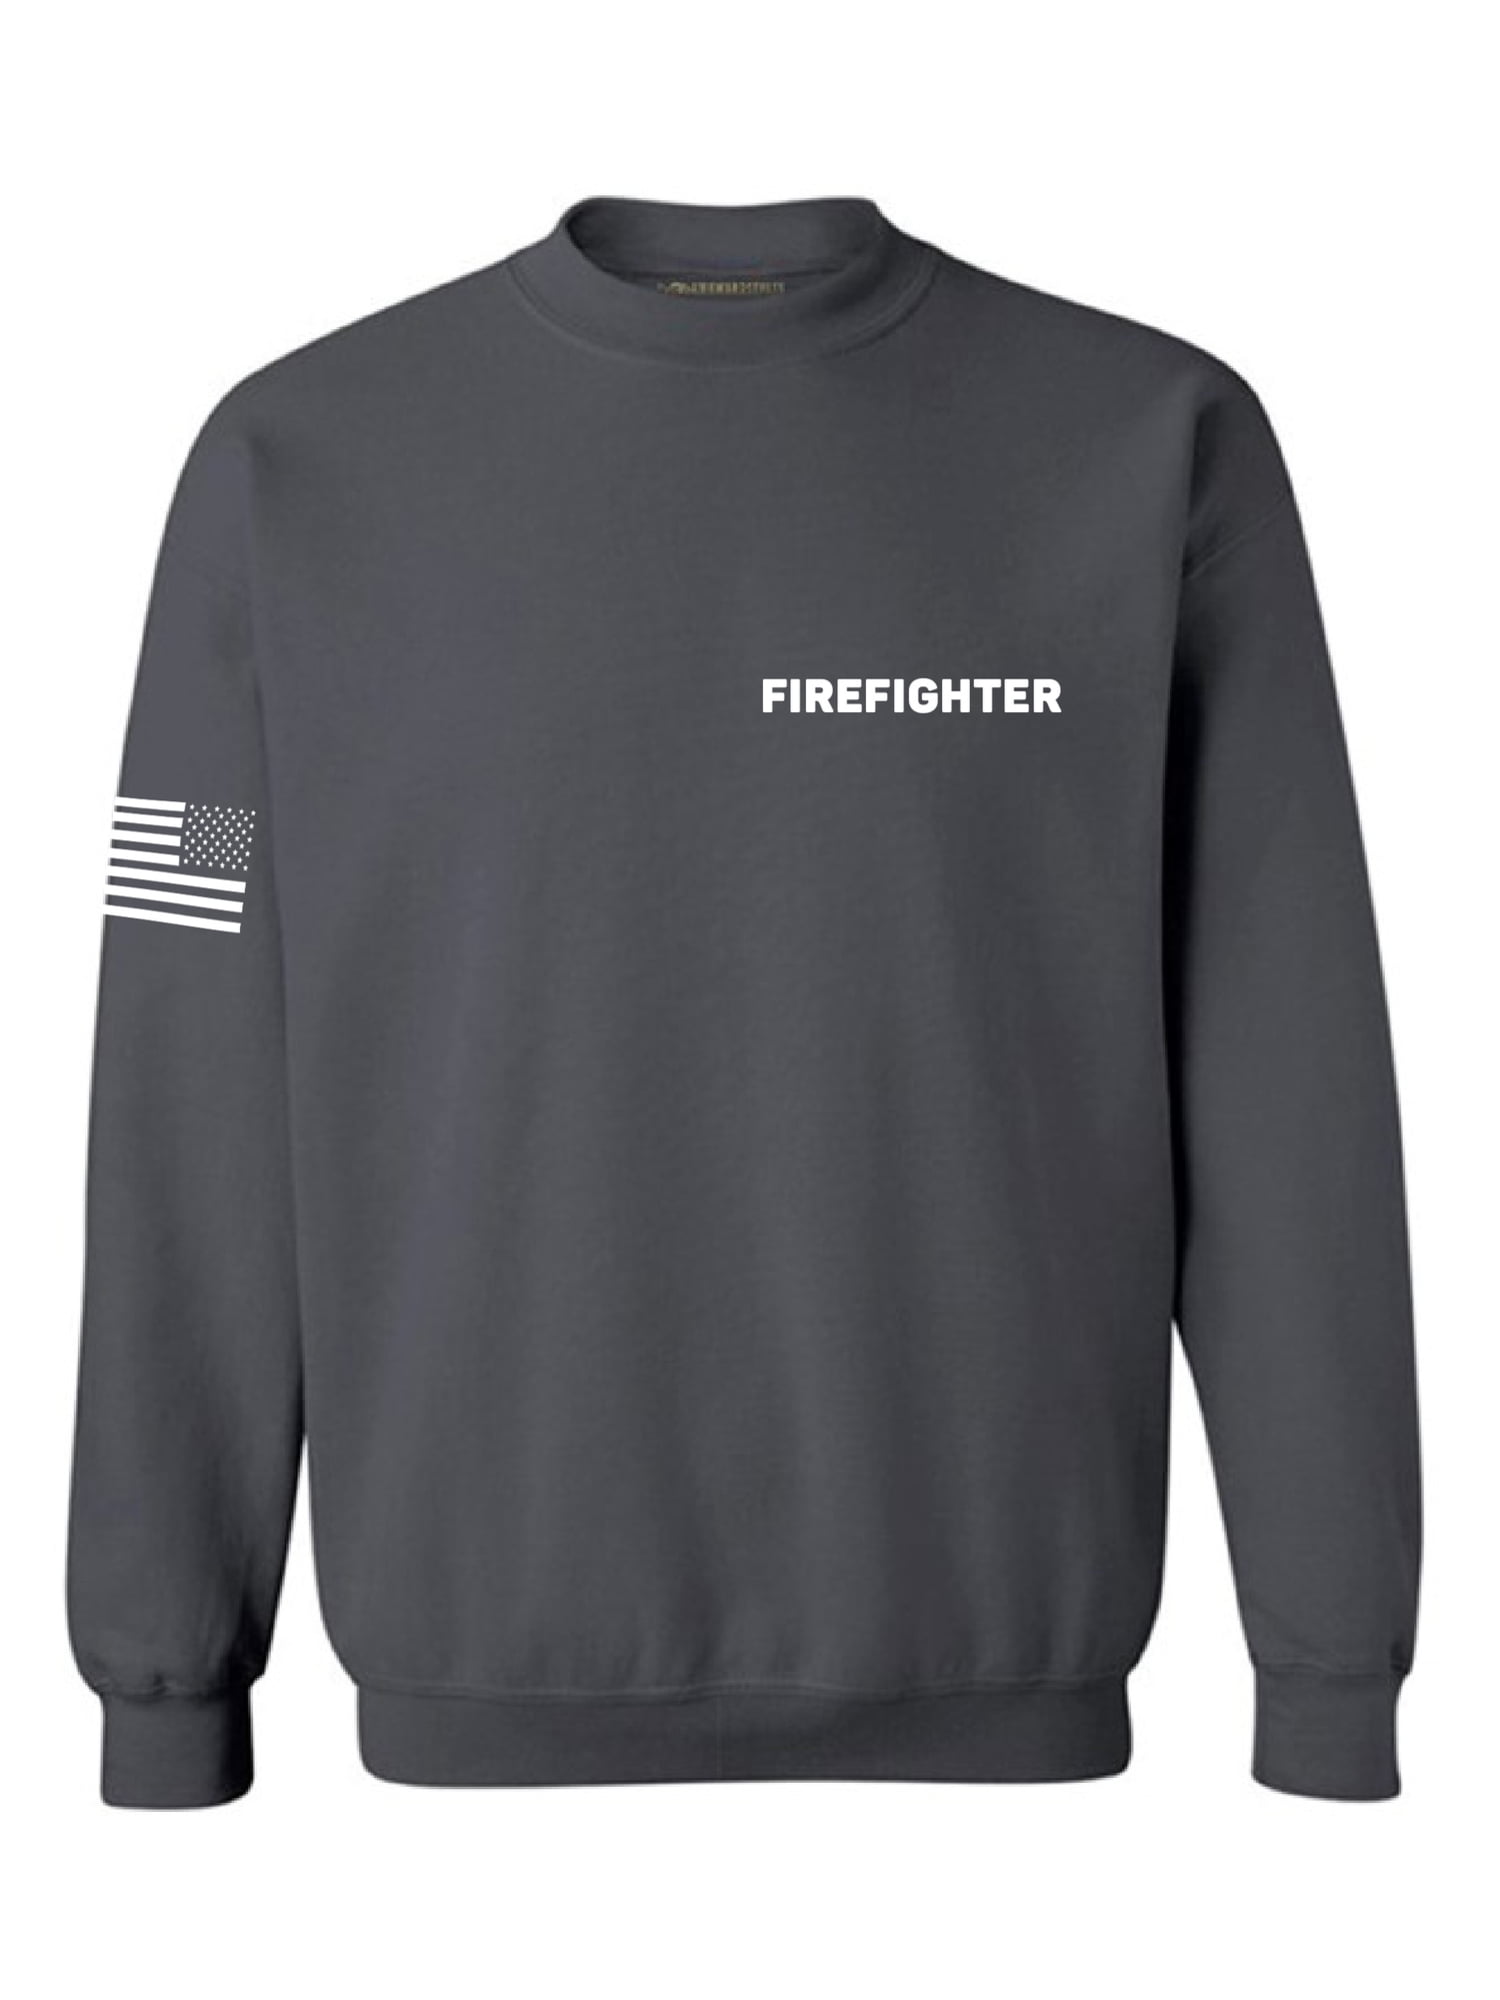 Men's VOLUNTEER FIREFIGHTER Black Hoodie Sweatshirt Sweater US Flag EMS 